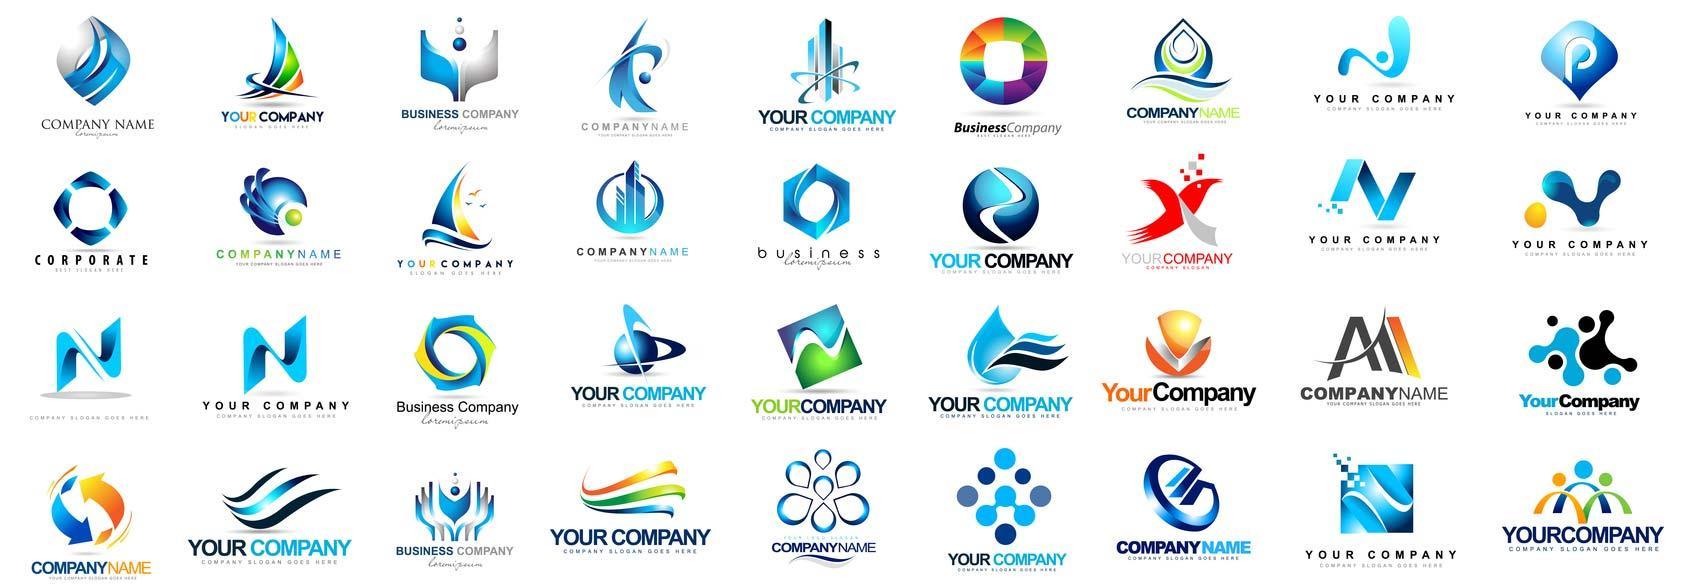 Nhiều kiểu logo công ty có rất nhiều kiểu